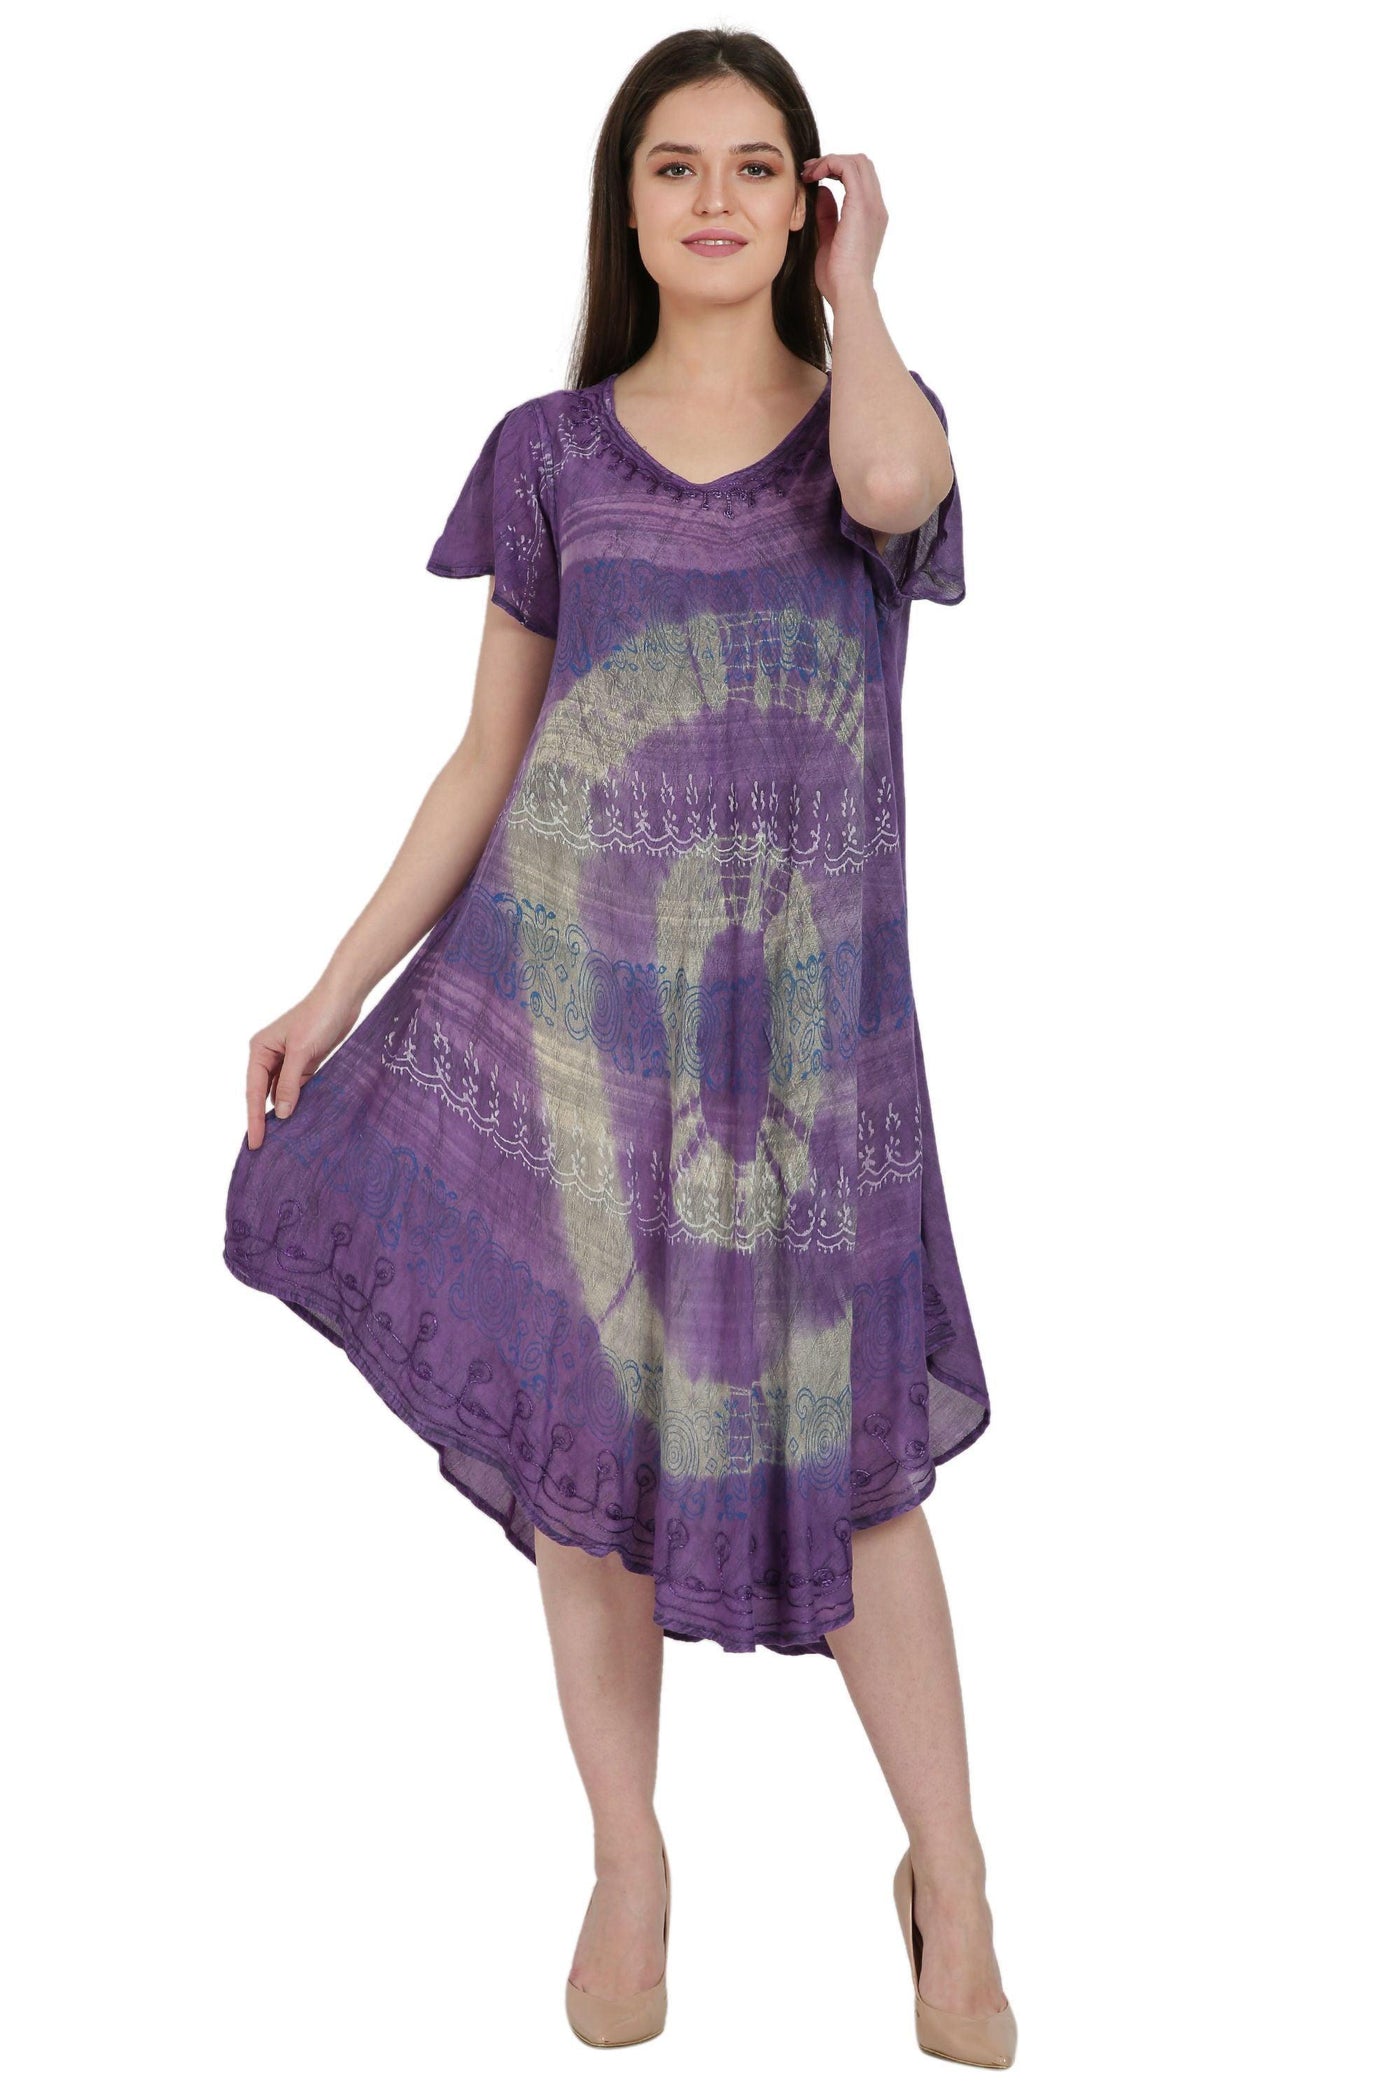 Traditional Batik + Tie Dye Umbrella Dress UDS48-2407  - Advance Apparels Inc